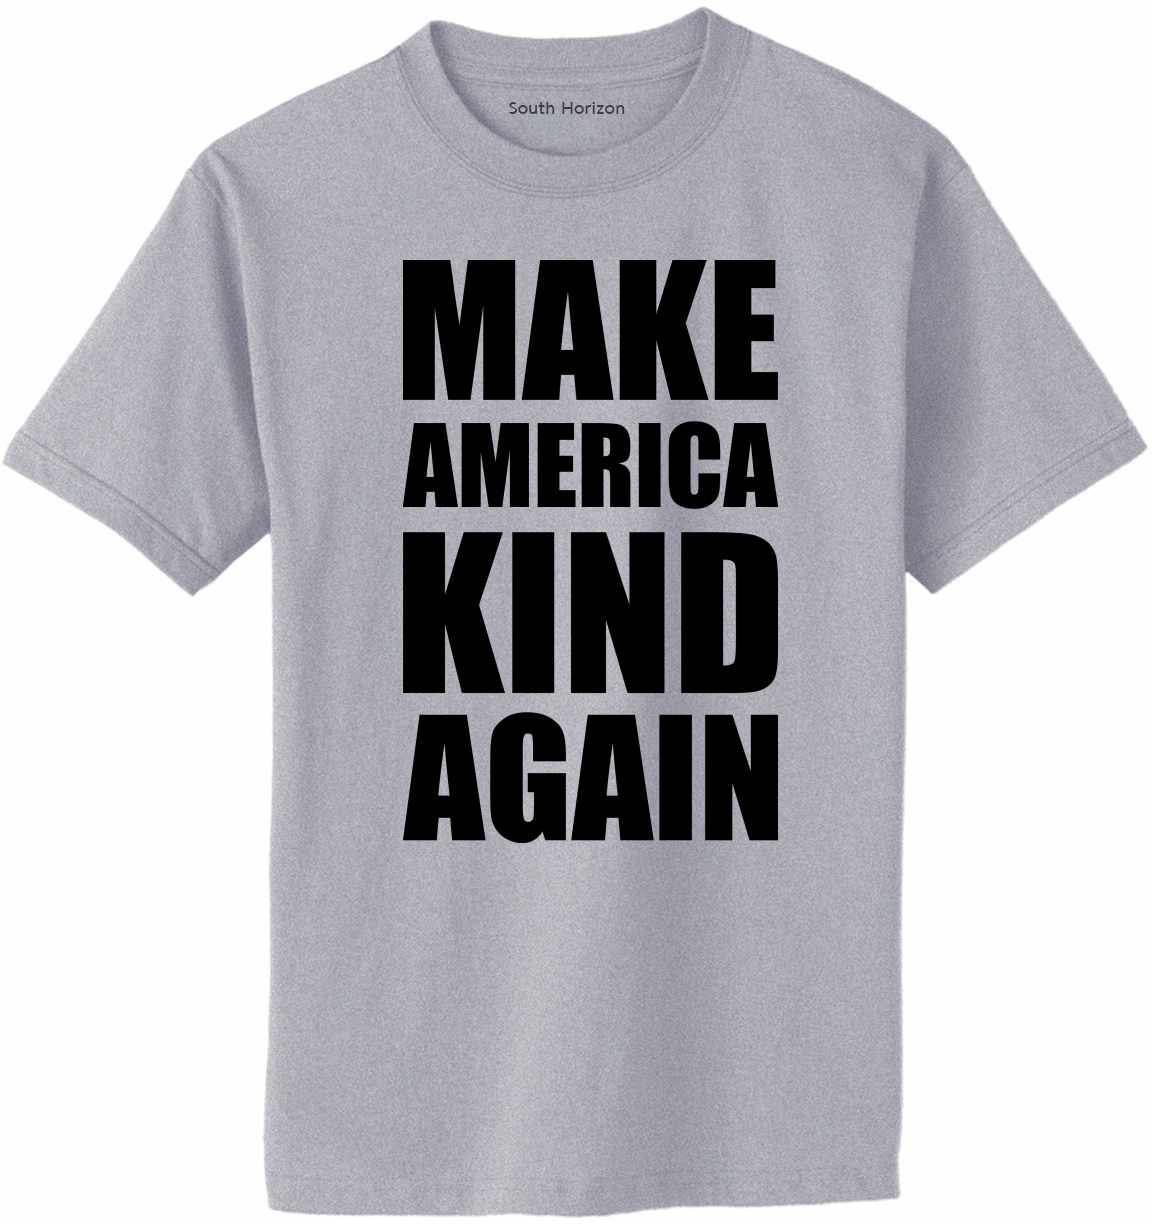 Make America Kind Again Adult T-Shirt (#1150-1)